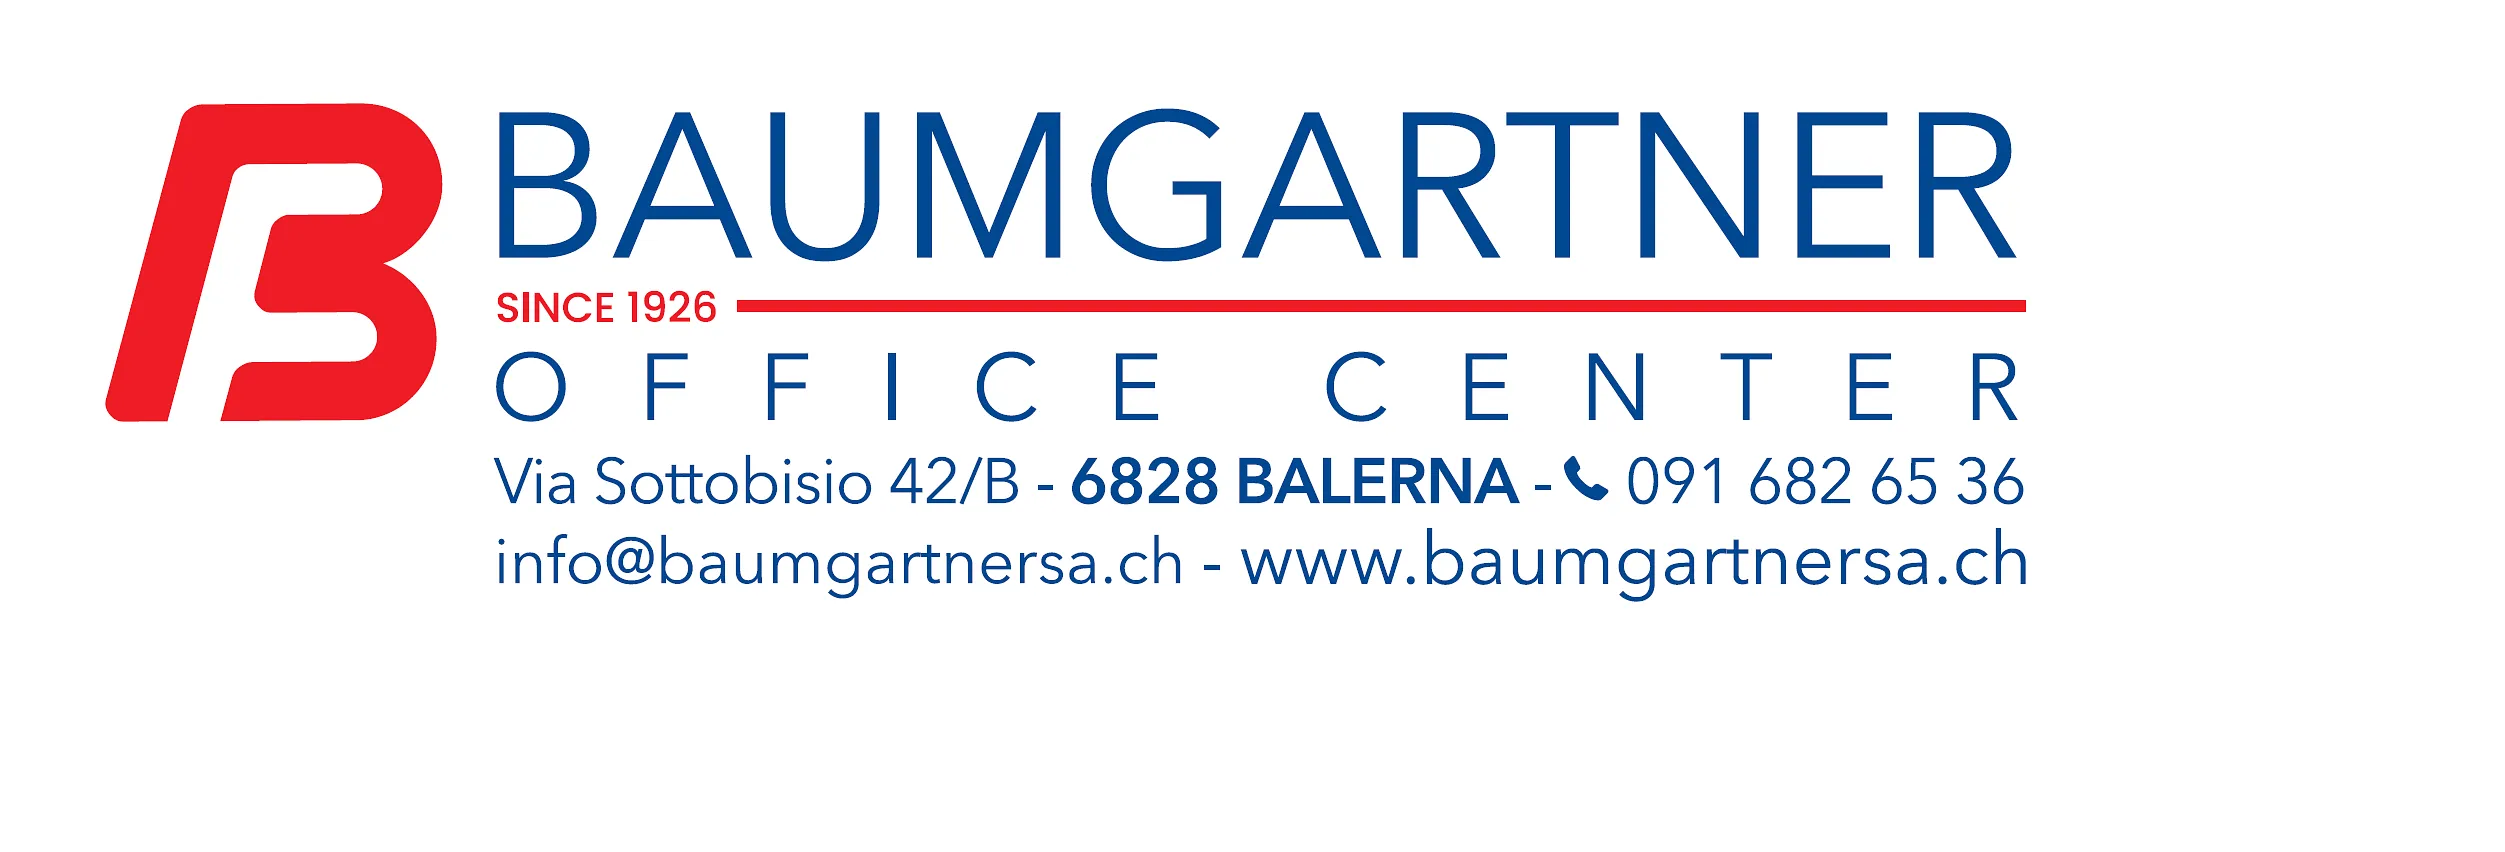 Baumgartner Fratelli G. e E. SA